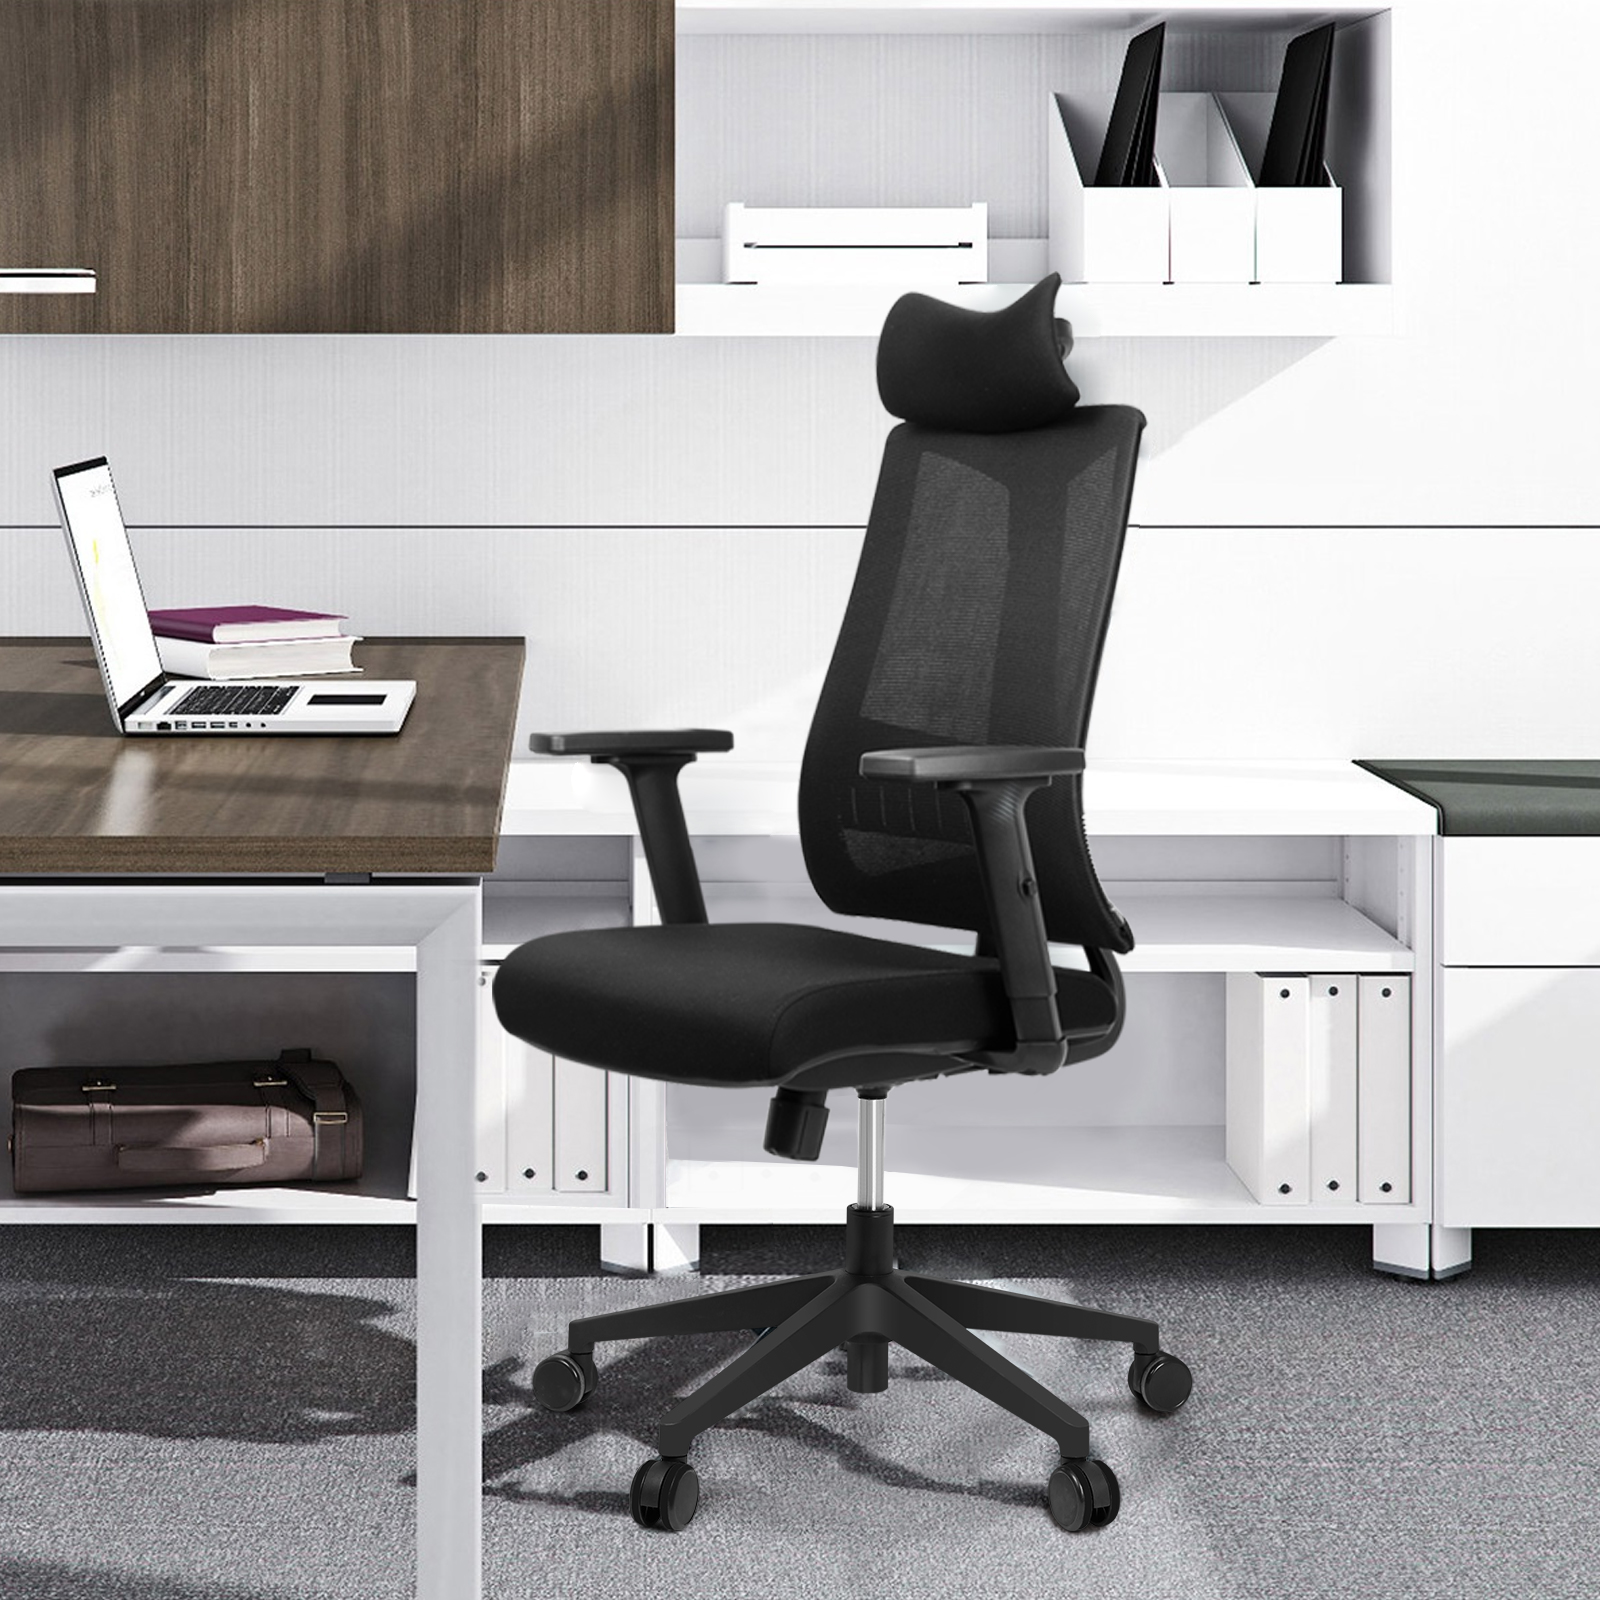 IKIDO OfficeStuhl11 Schreibtischstuhl, schwarz